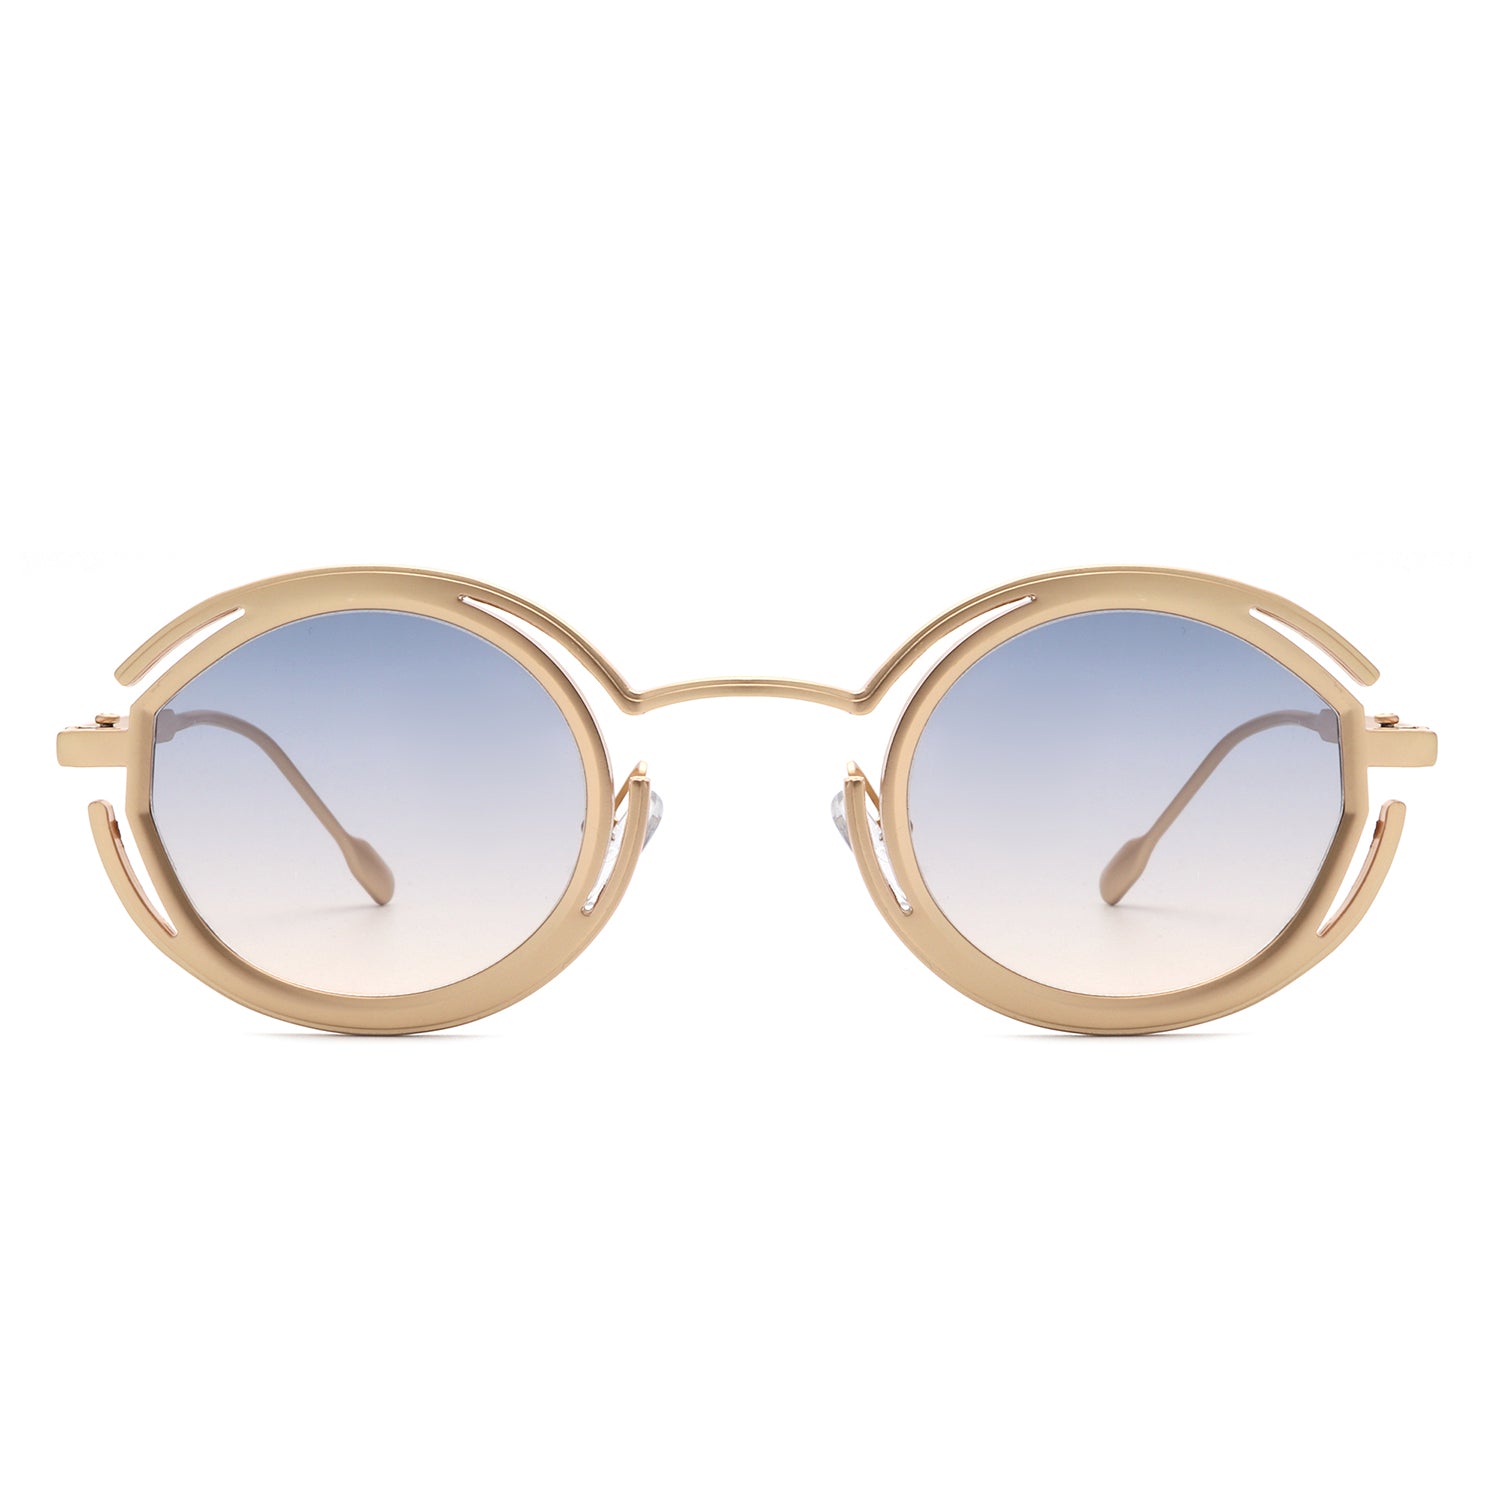 HJ2048 - Fashion Circle Geometric Round Futuristic Fashion Wholesale Sunglasses